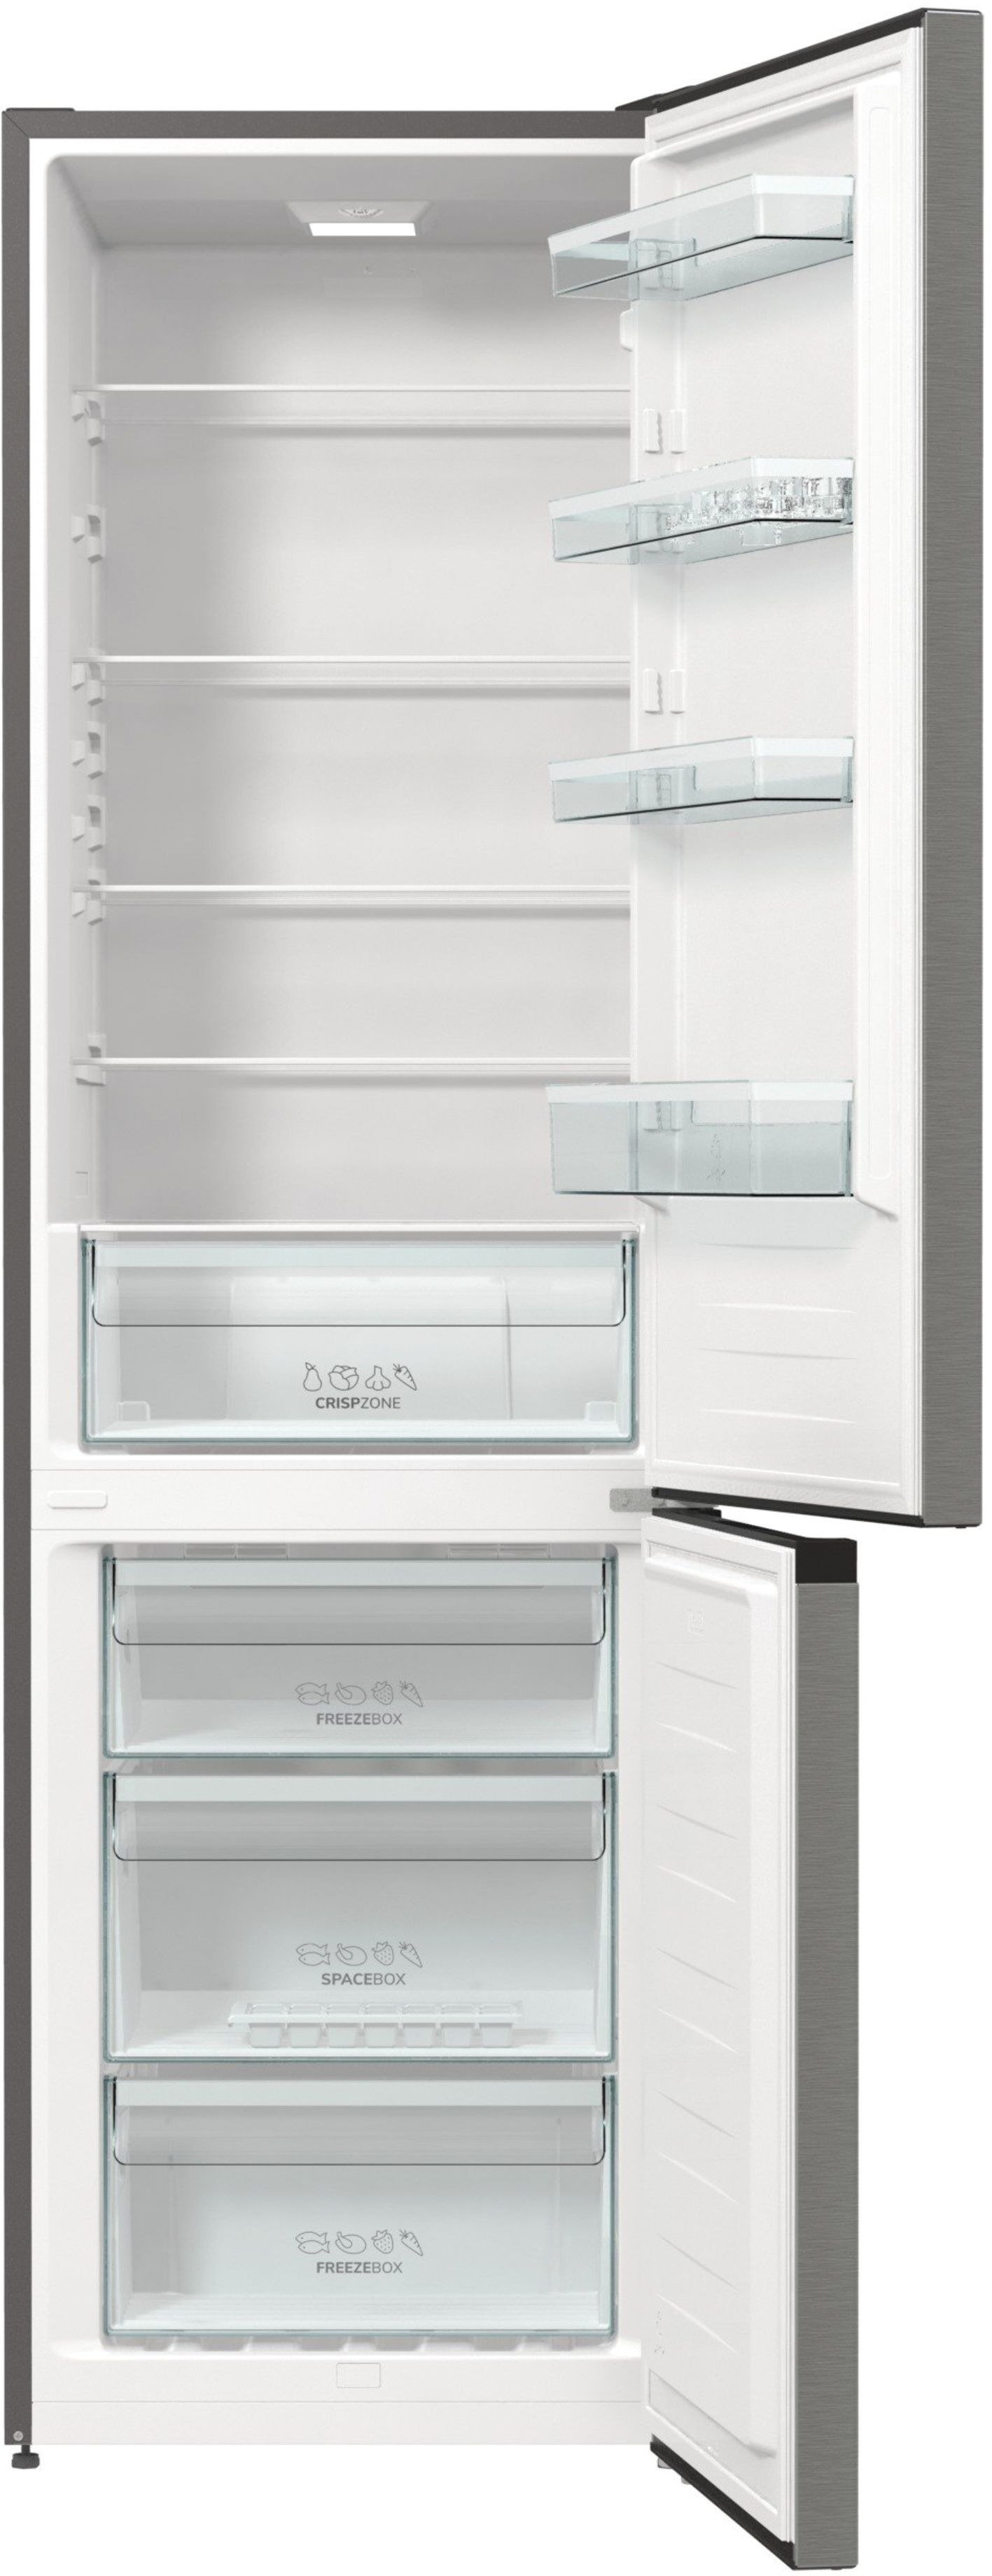 Холодильник Gorenje RK6192EXL4 цена 16499.00 грн - фотография 2